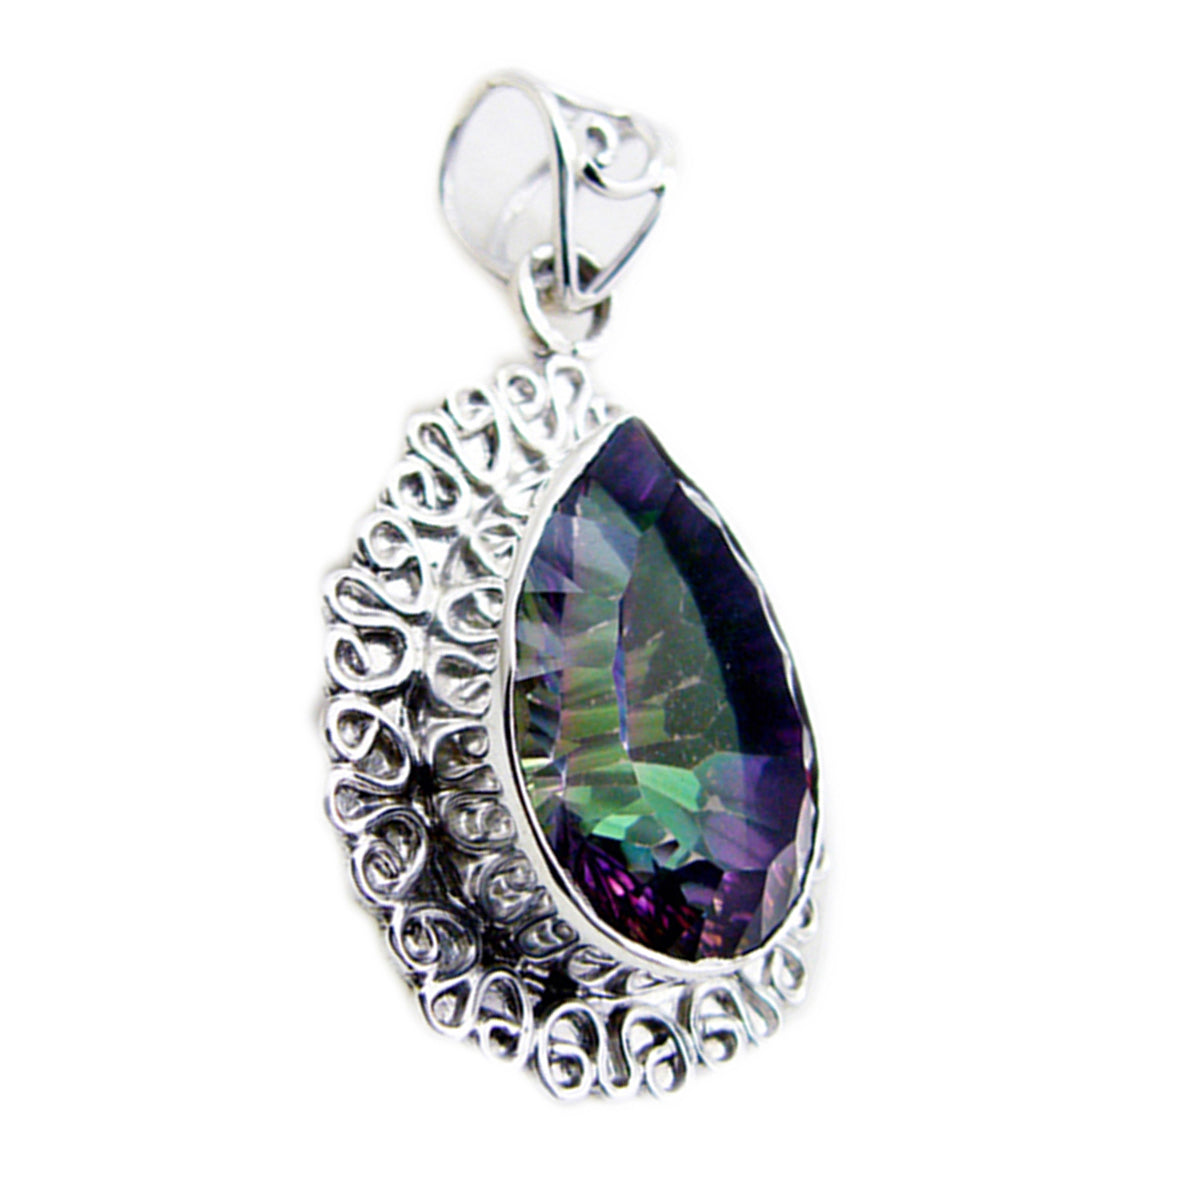 riyo smashing gems päron facetterad flerfärgad mystic quartz silver hängsmycke present till annandag